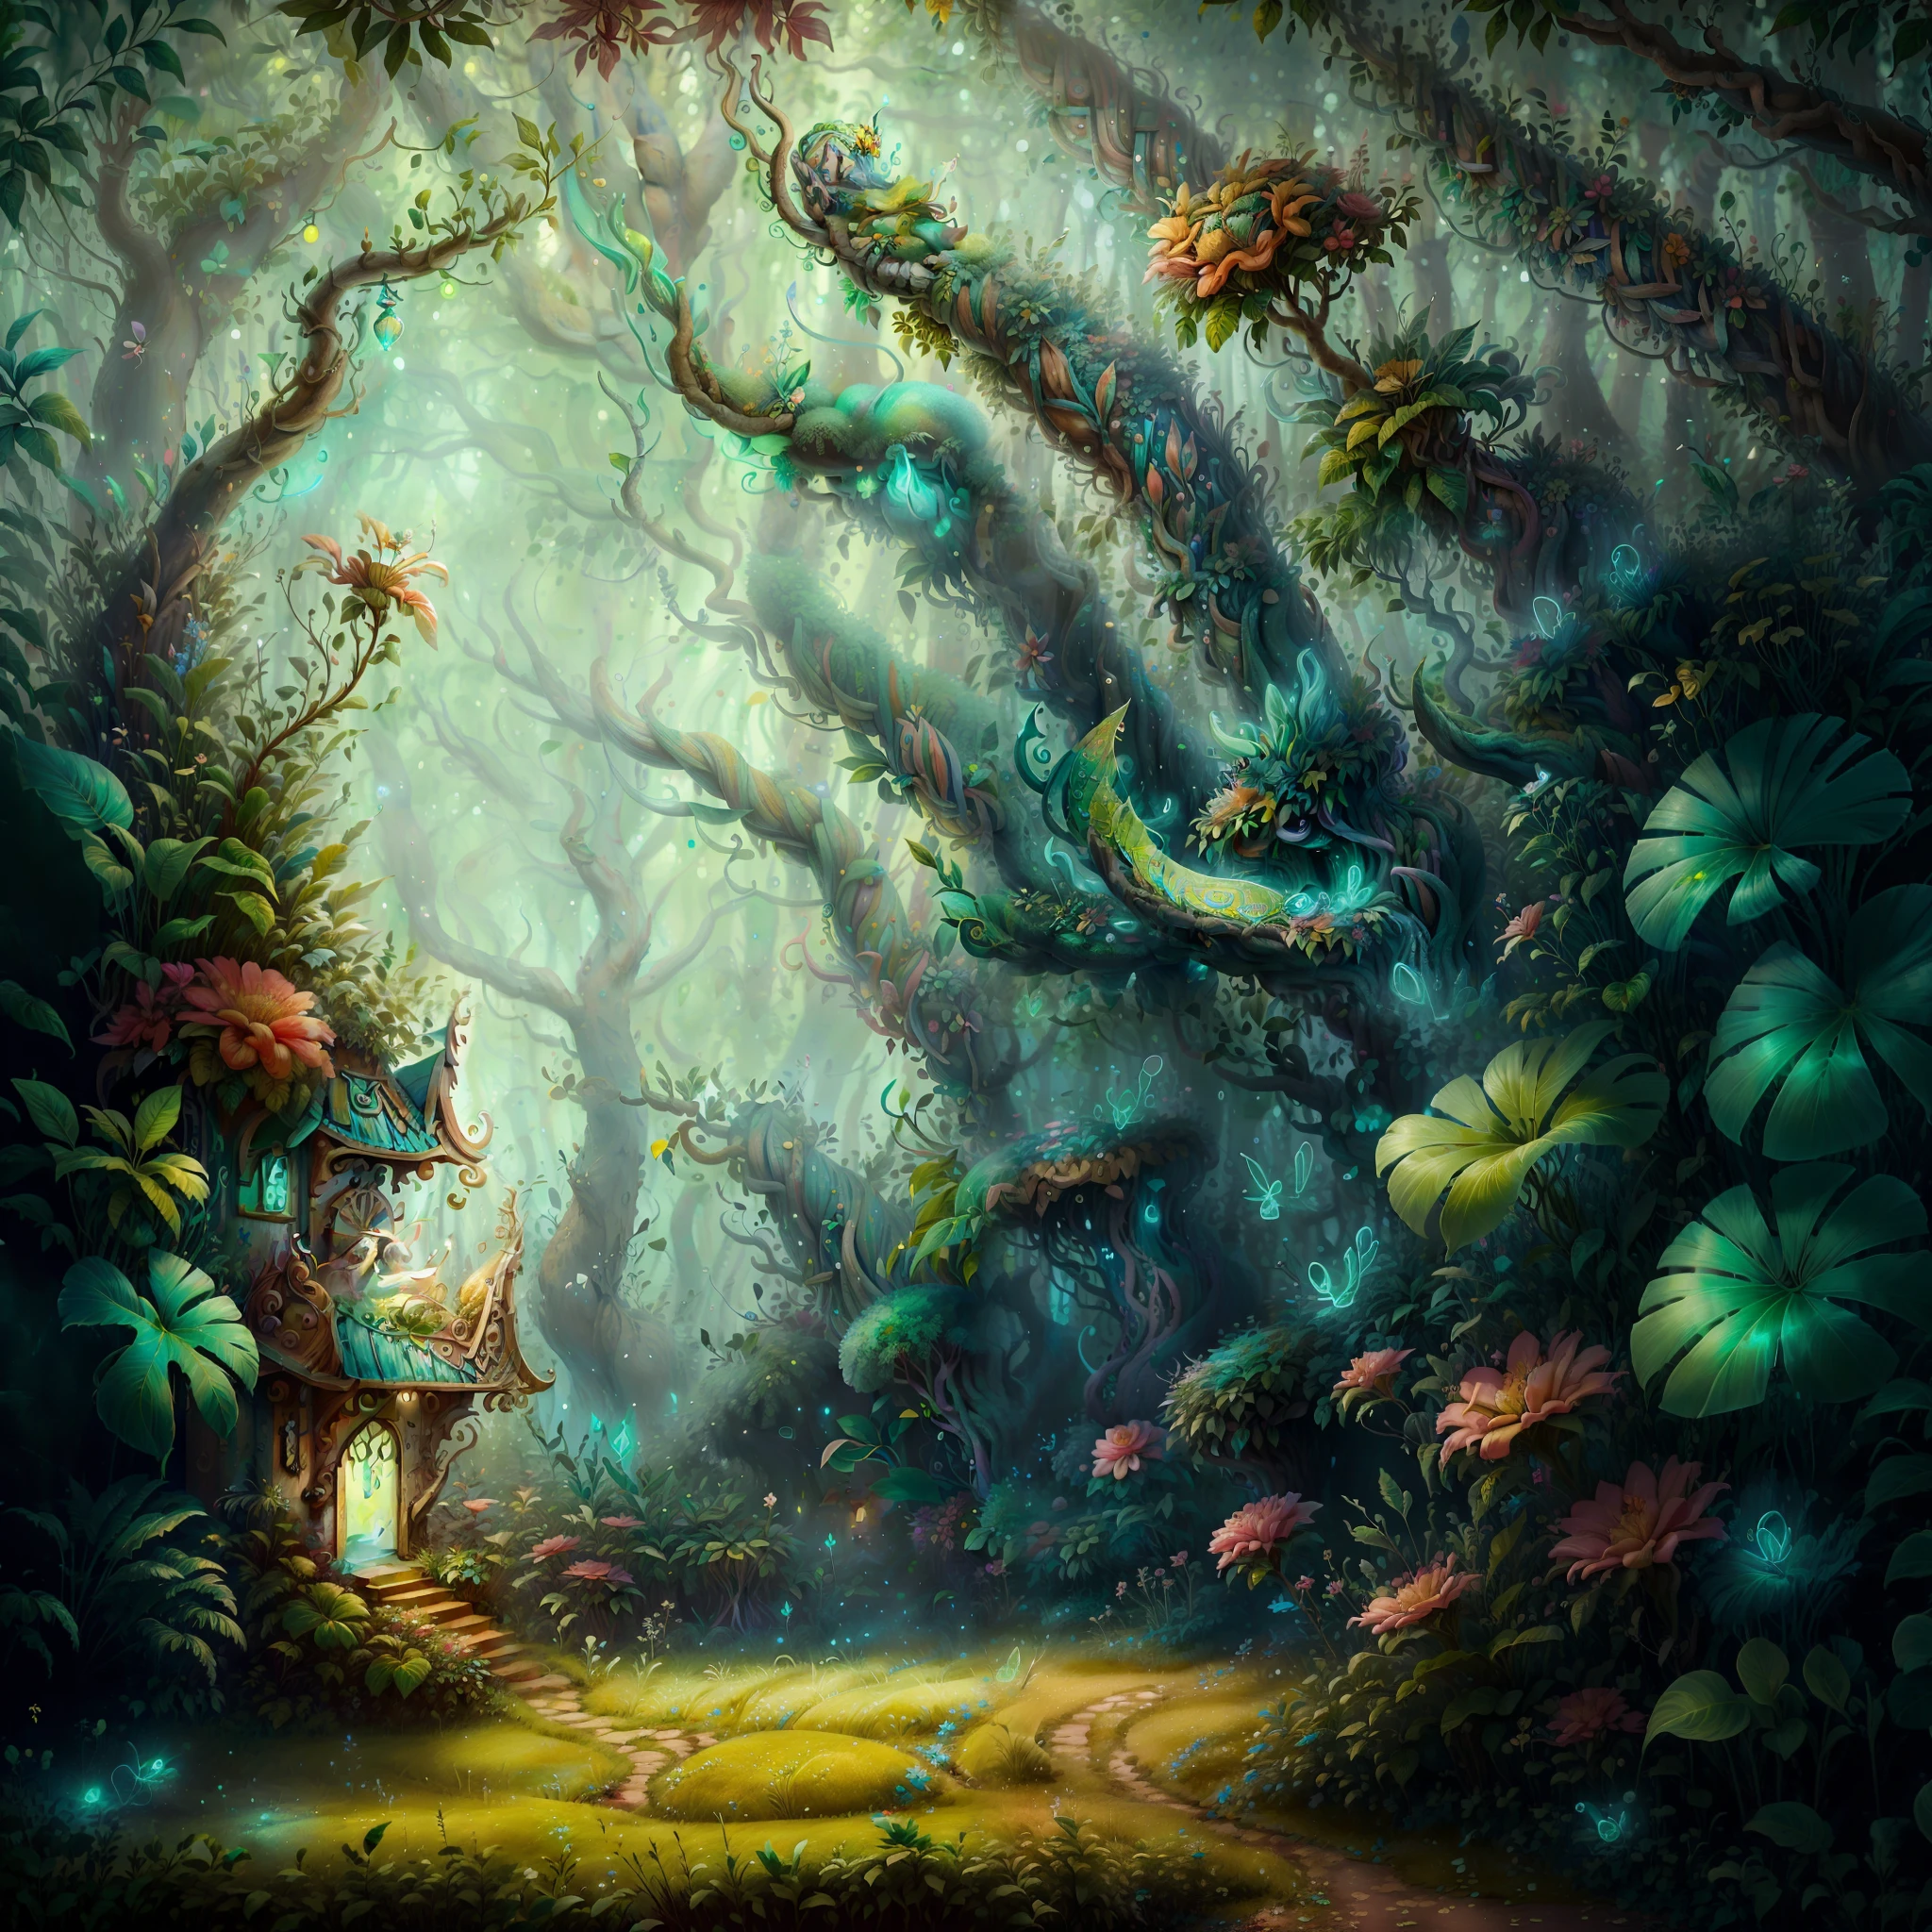 femme fée, BÉLISSIMA, peau blanche, cheveux longs et blonds, vêtement vert, yeux bleus, dans une forêt magique, champignons en jaune fluo